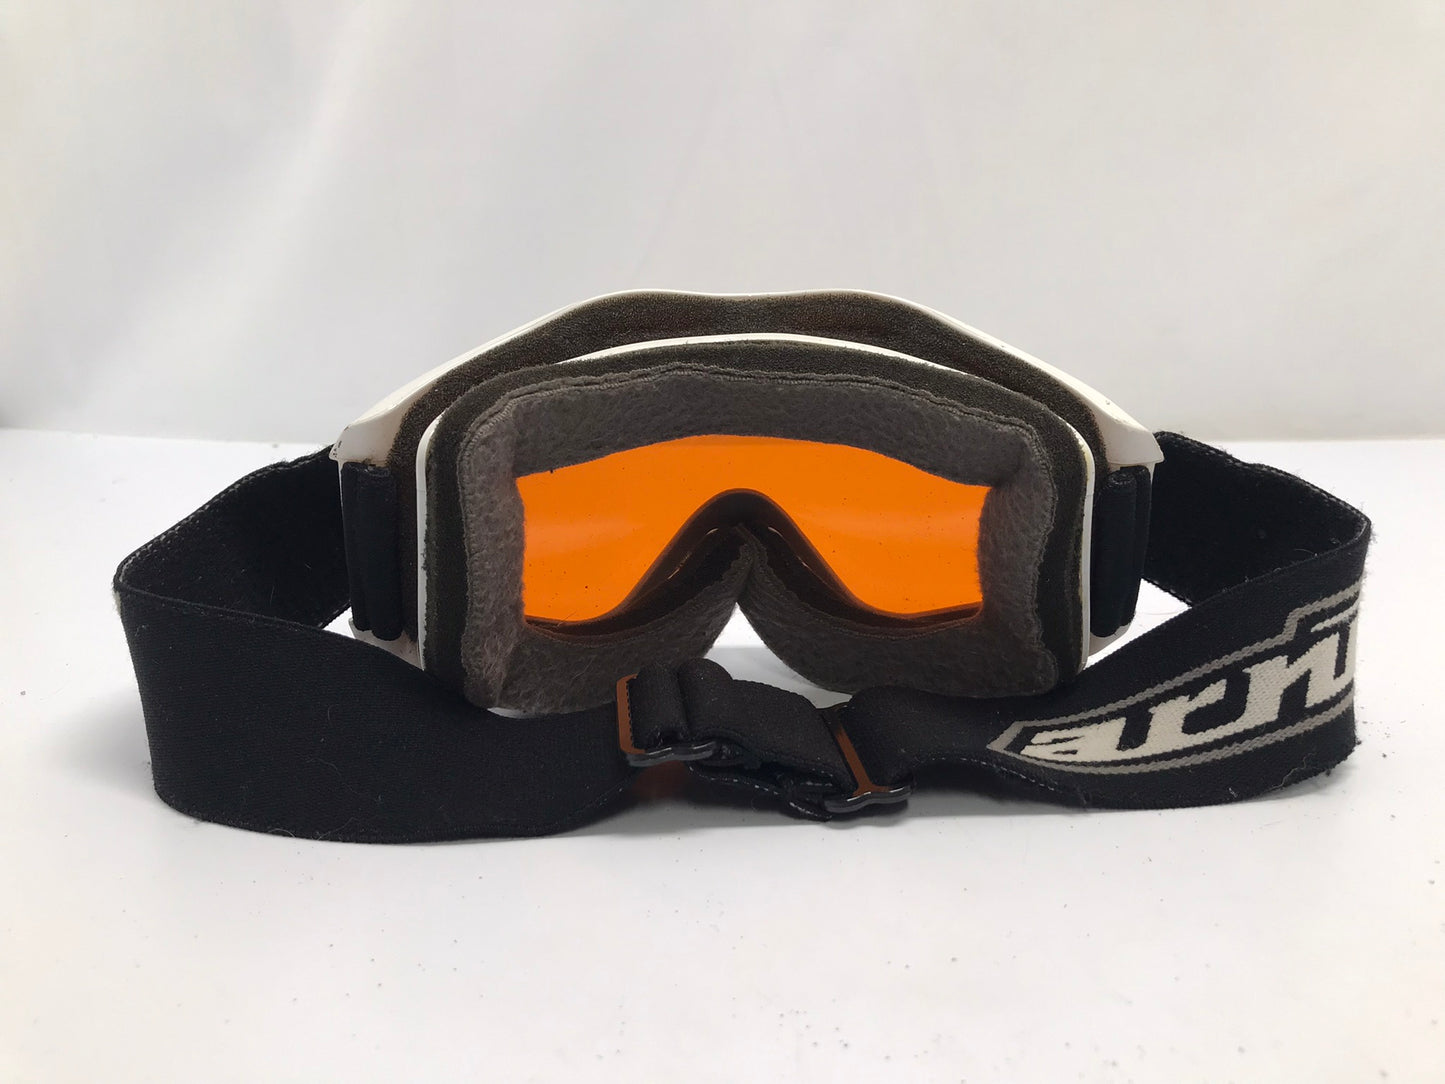 Ski Goggles Adult Size Large Arnette White Black Orange Lenses